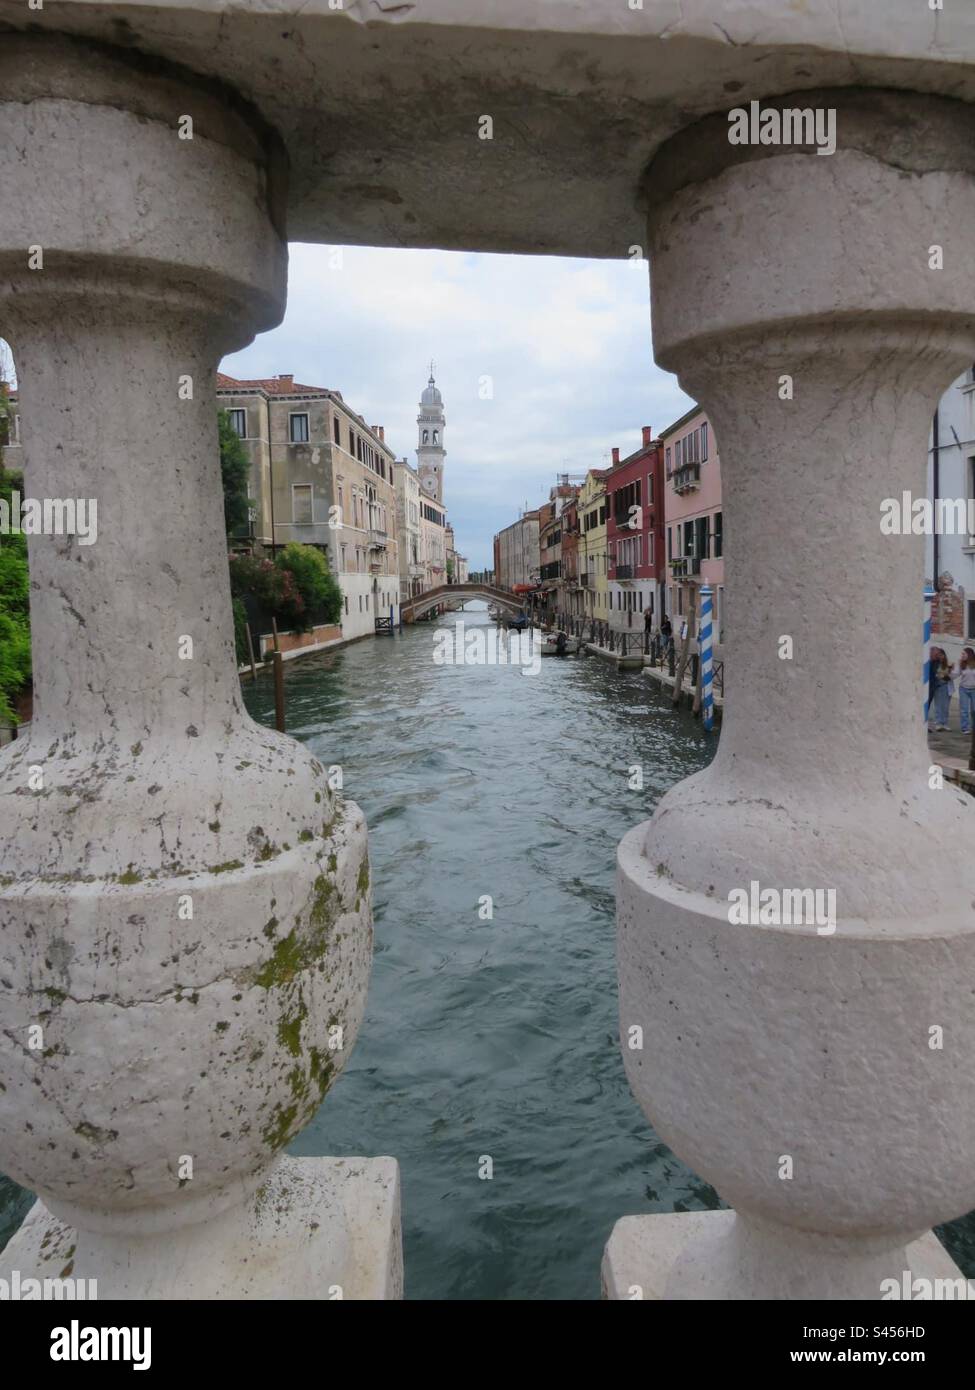 Venice! Italy! Stock Photo